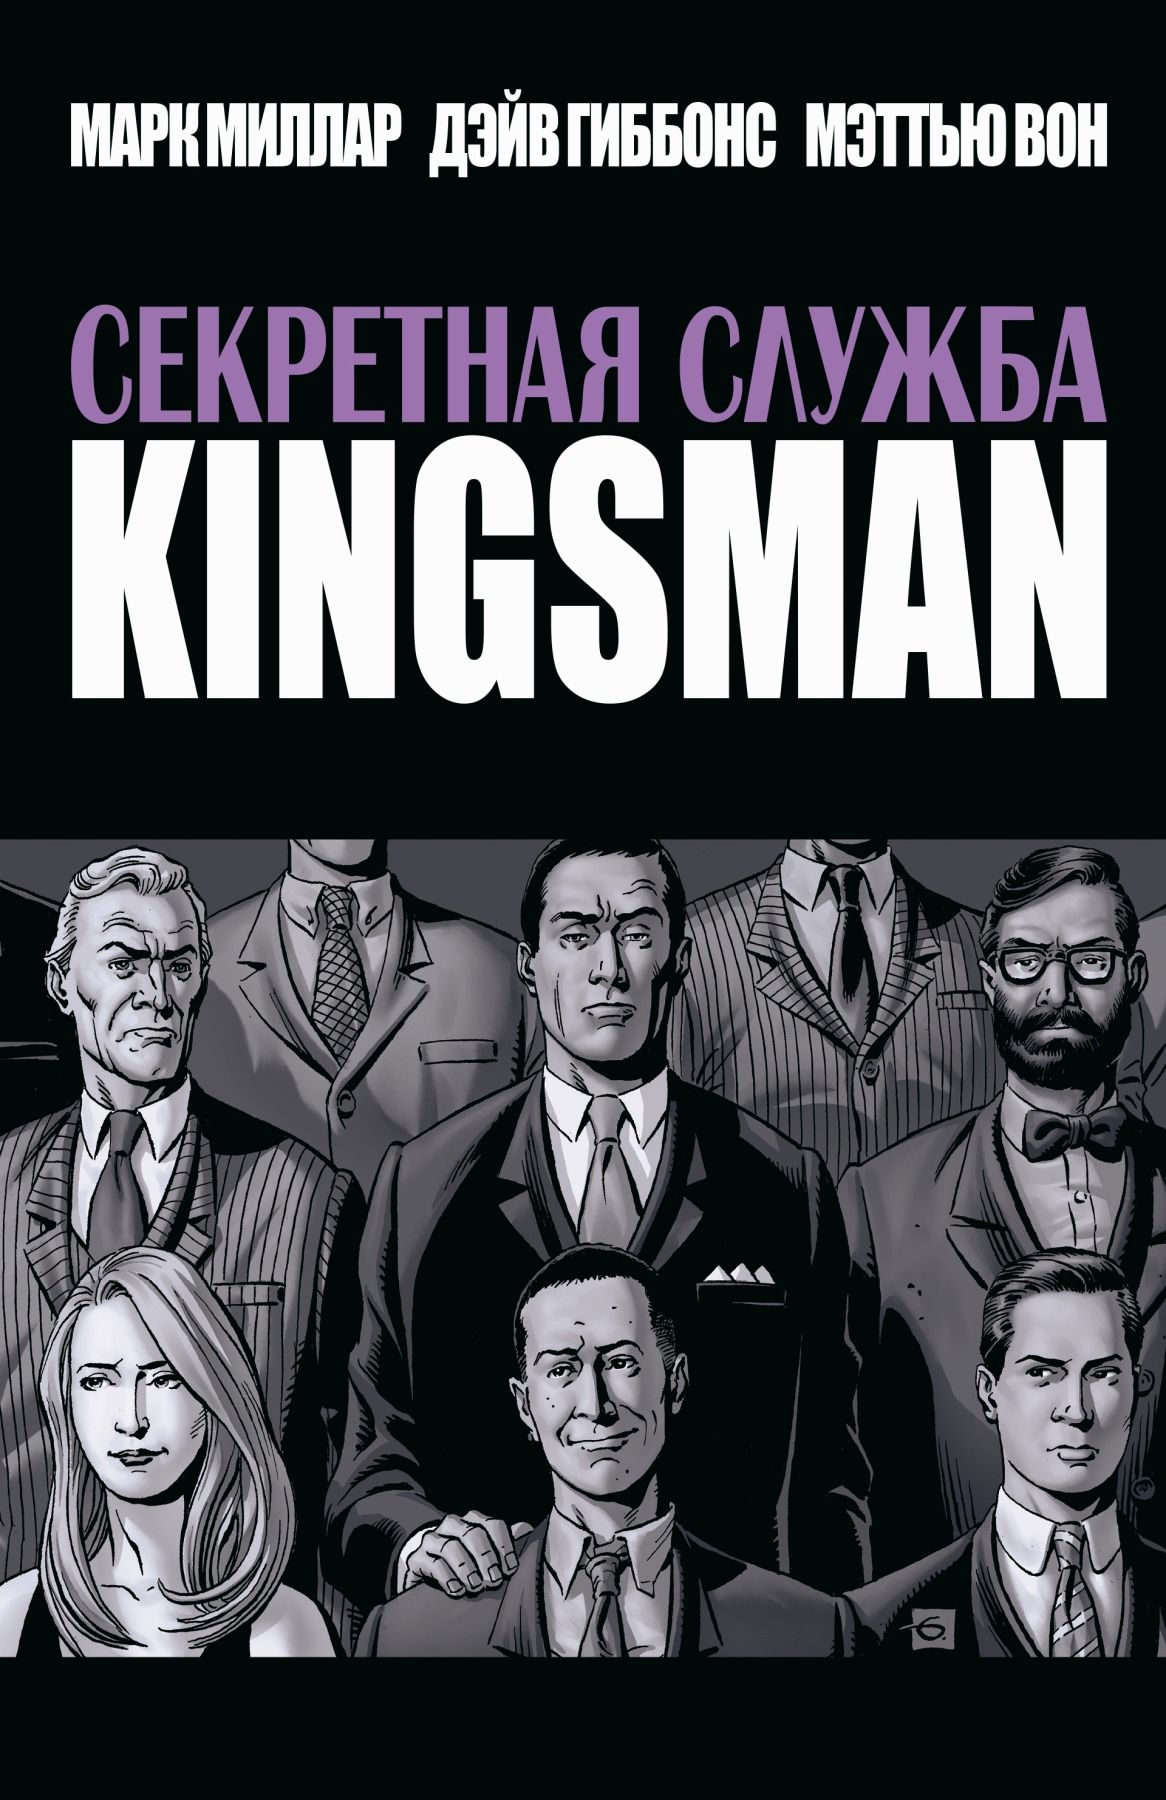 Комикс на русском языке "Секретная служба. Kingsman"